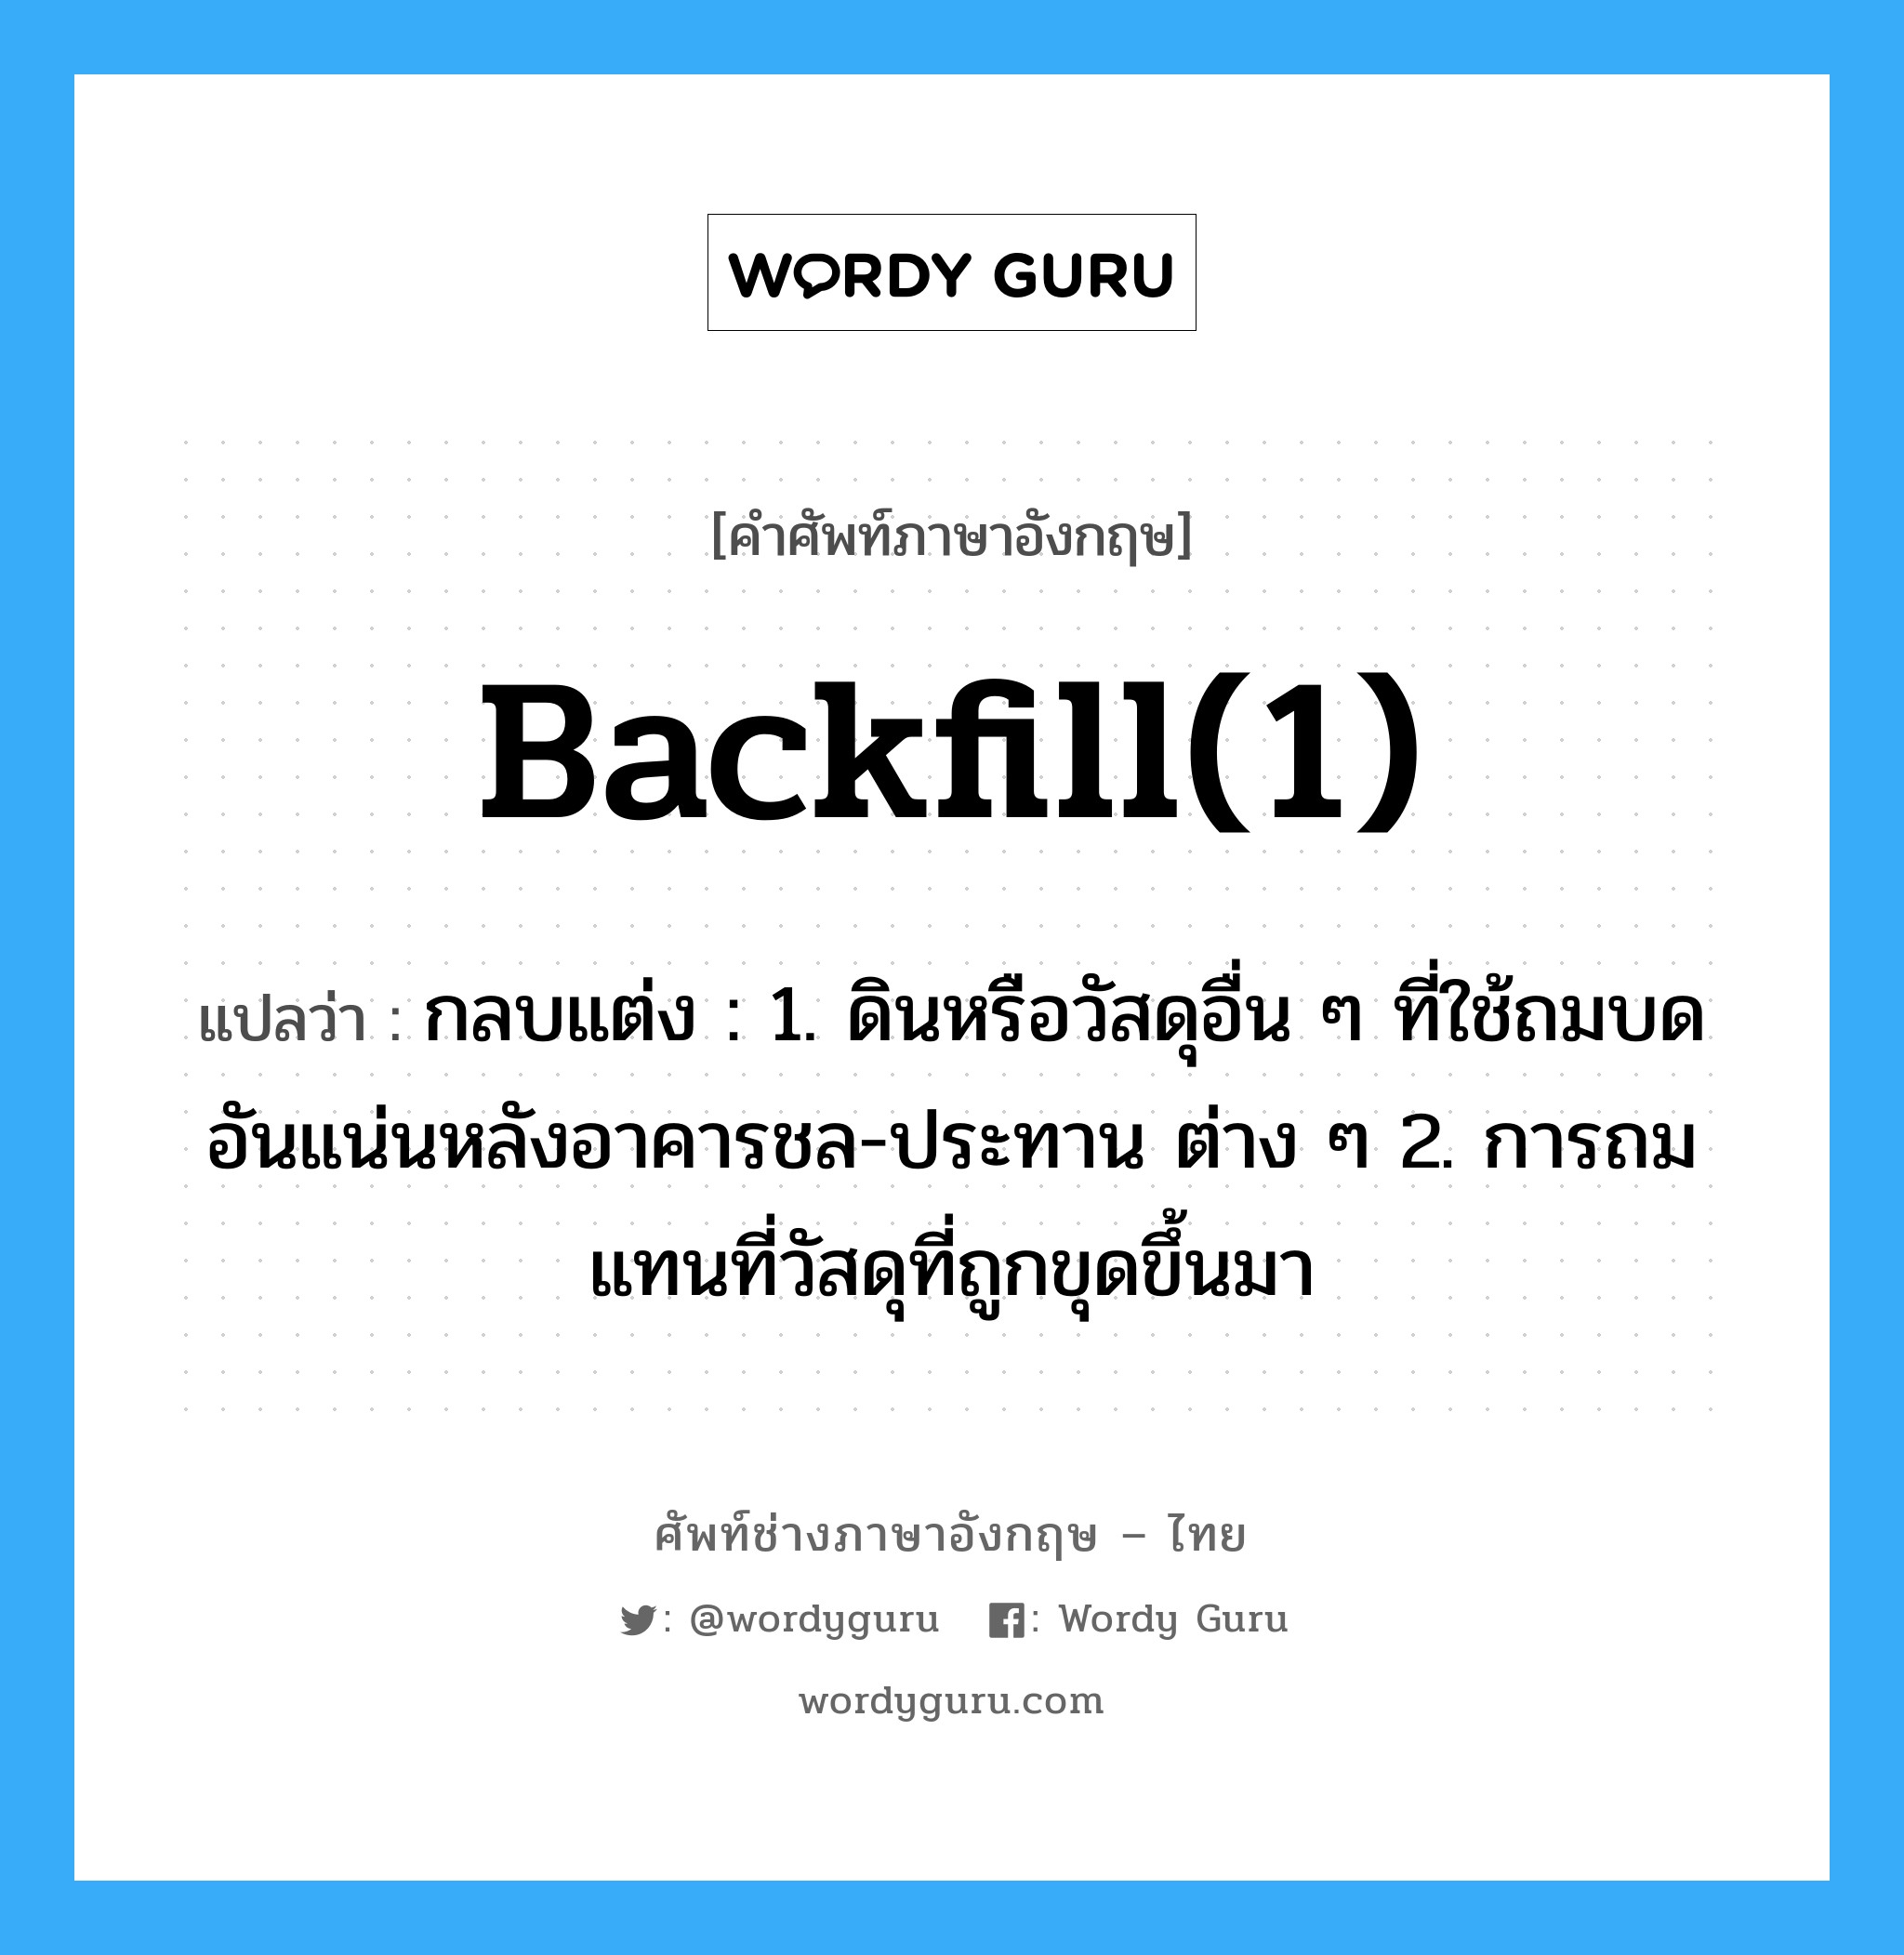 backfill(1) แปลว่า?, คำศัพท์ช่างภาษาอังกฤษ - ไทย backfill(1) คำศัพท์ภาษาอังกฤษ backfill(1) แปลว่า กลบแต่ง : 1. ดินหรือวัสดุอื่น ๆ ที่ใช้ถมบดอันแน่นหลังอาคารชล-ประทาน ต่าง ๆ 2. การถมแทนที่วัสดุที่ถูกขุดขึ้นมา